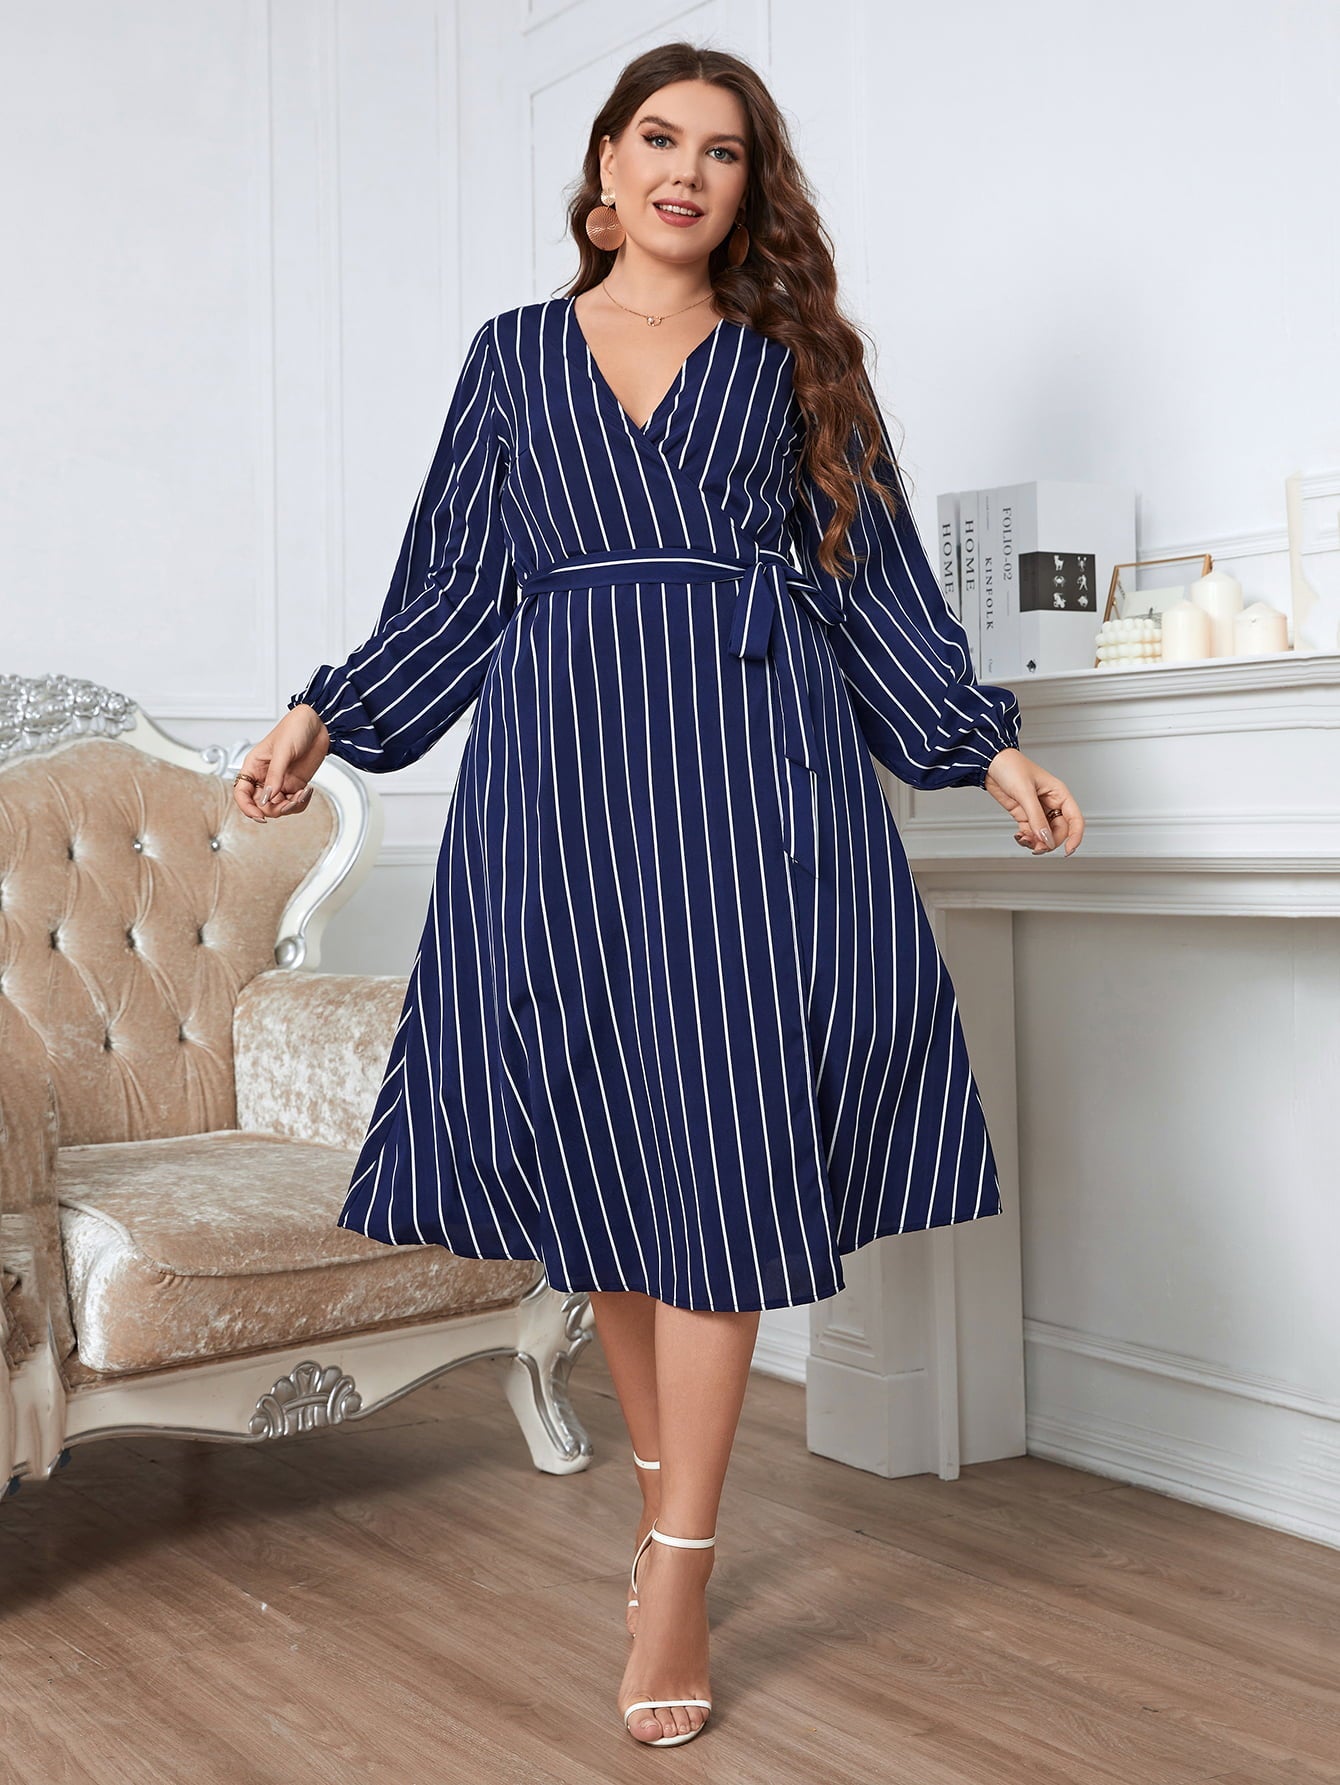 Melo Apparel Plus Size Striped Surplice Neck Long Sleeve Dress | Sugarz Chique Boutique